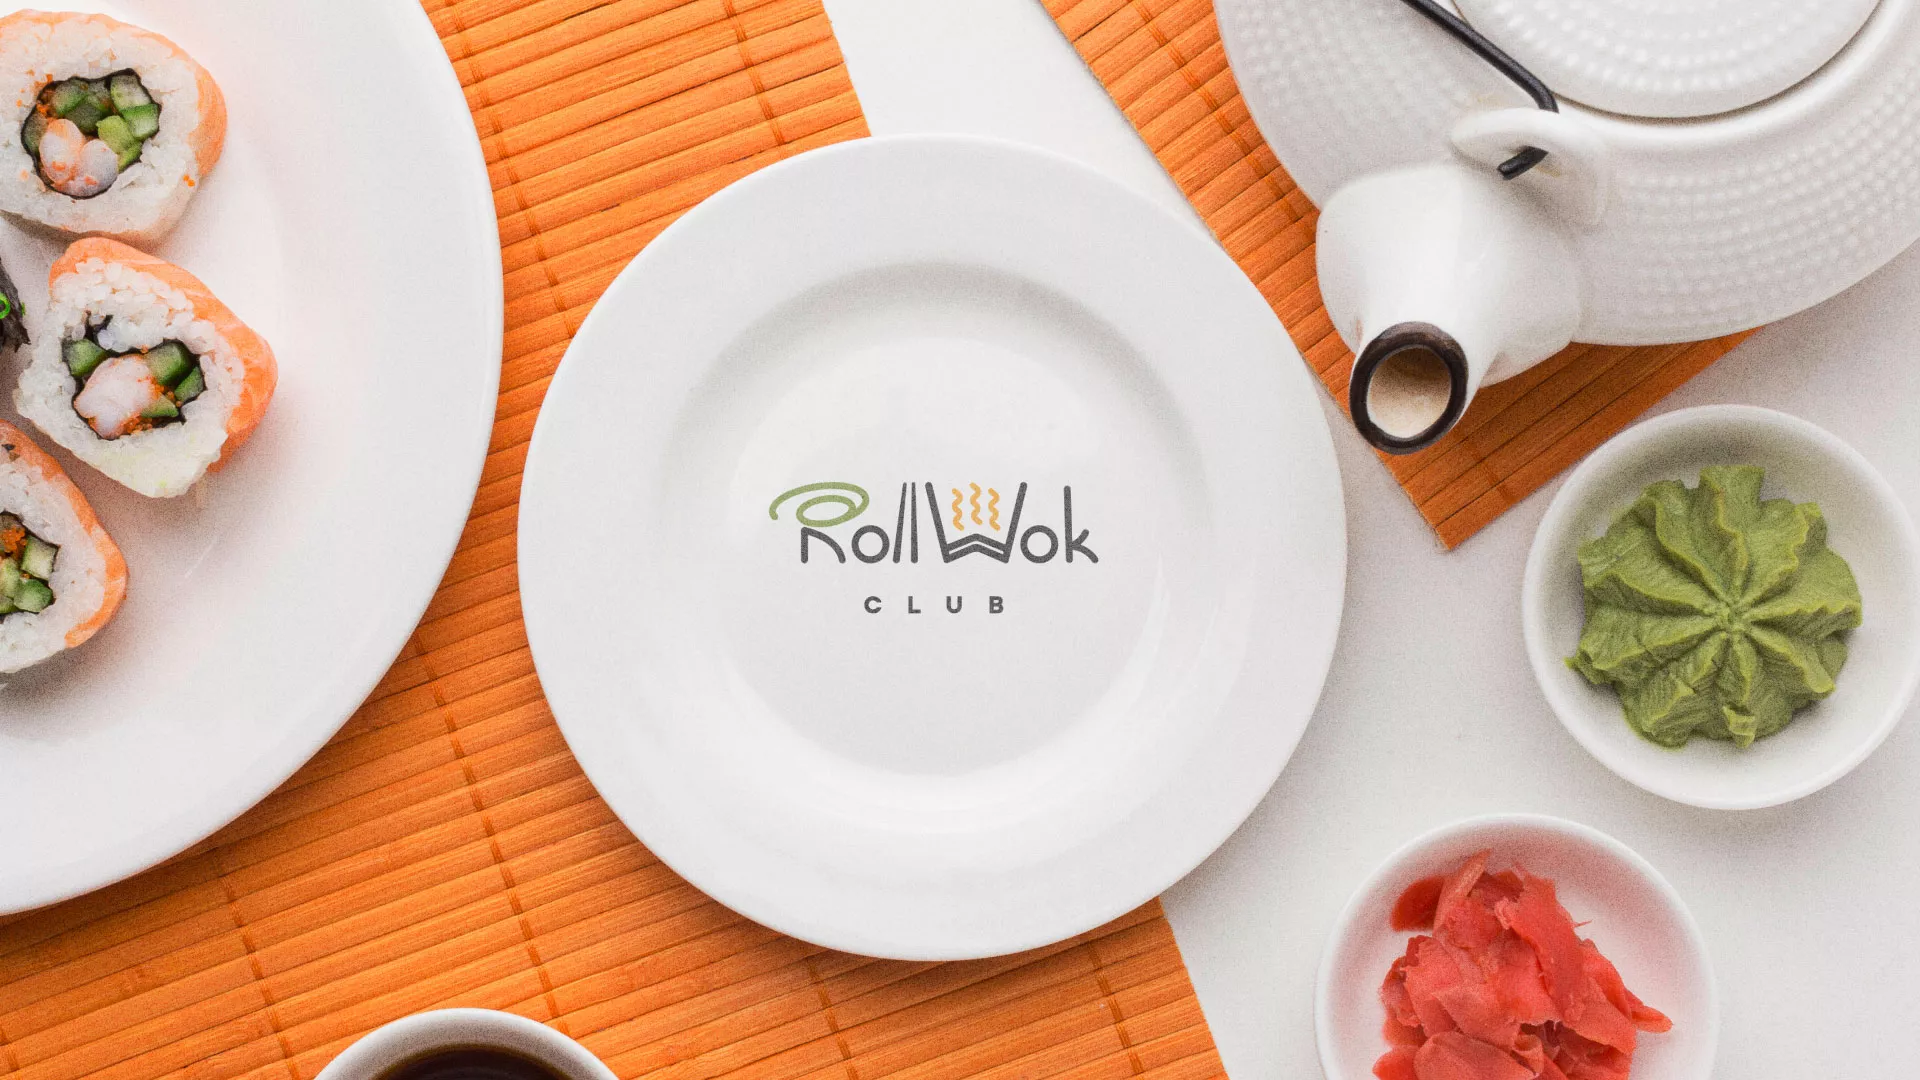 Разработка логотипа и фирменного стиля суши-бара «Roll Wok Club» в Злынке